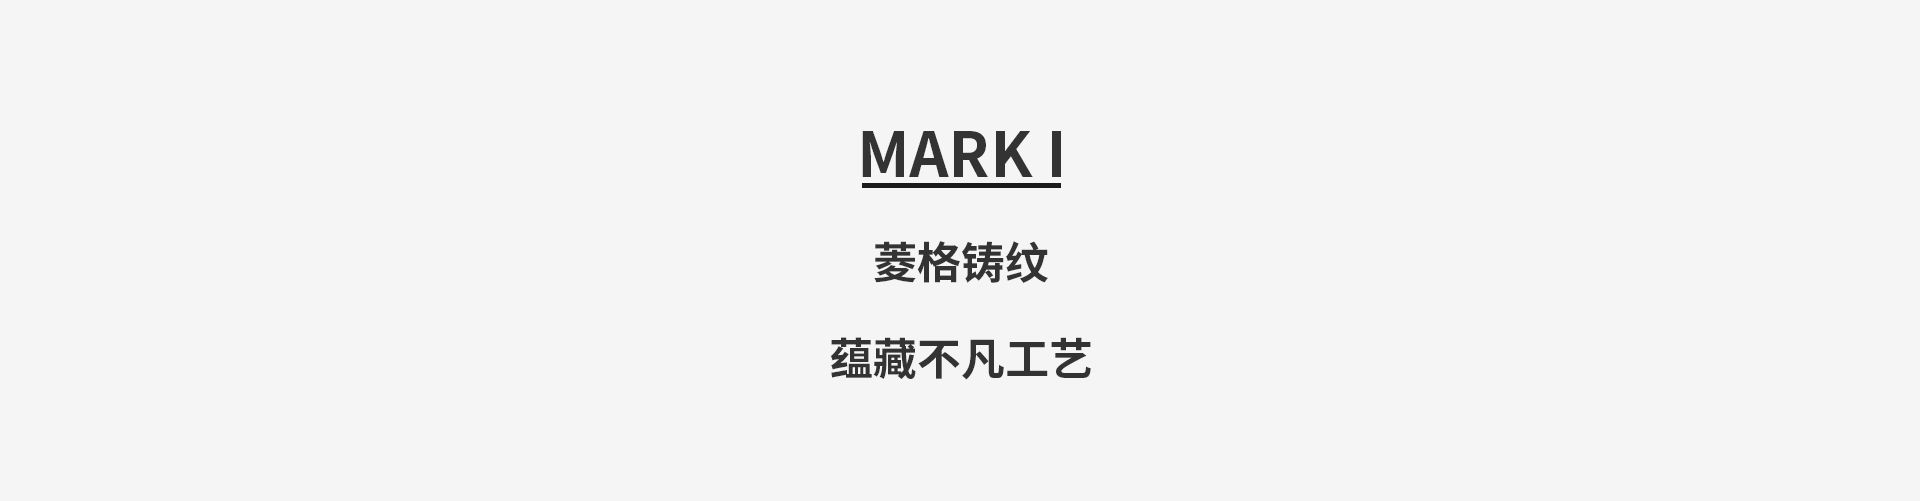 商品內頁-Mark 1 .jpg